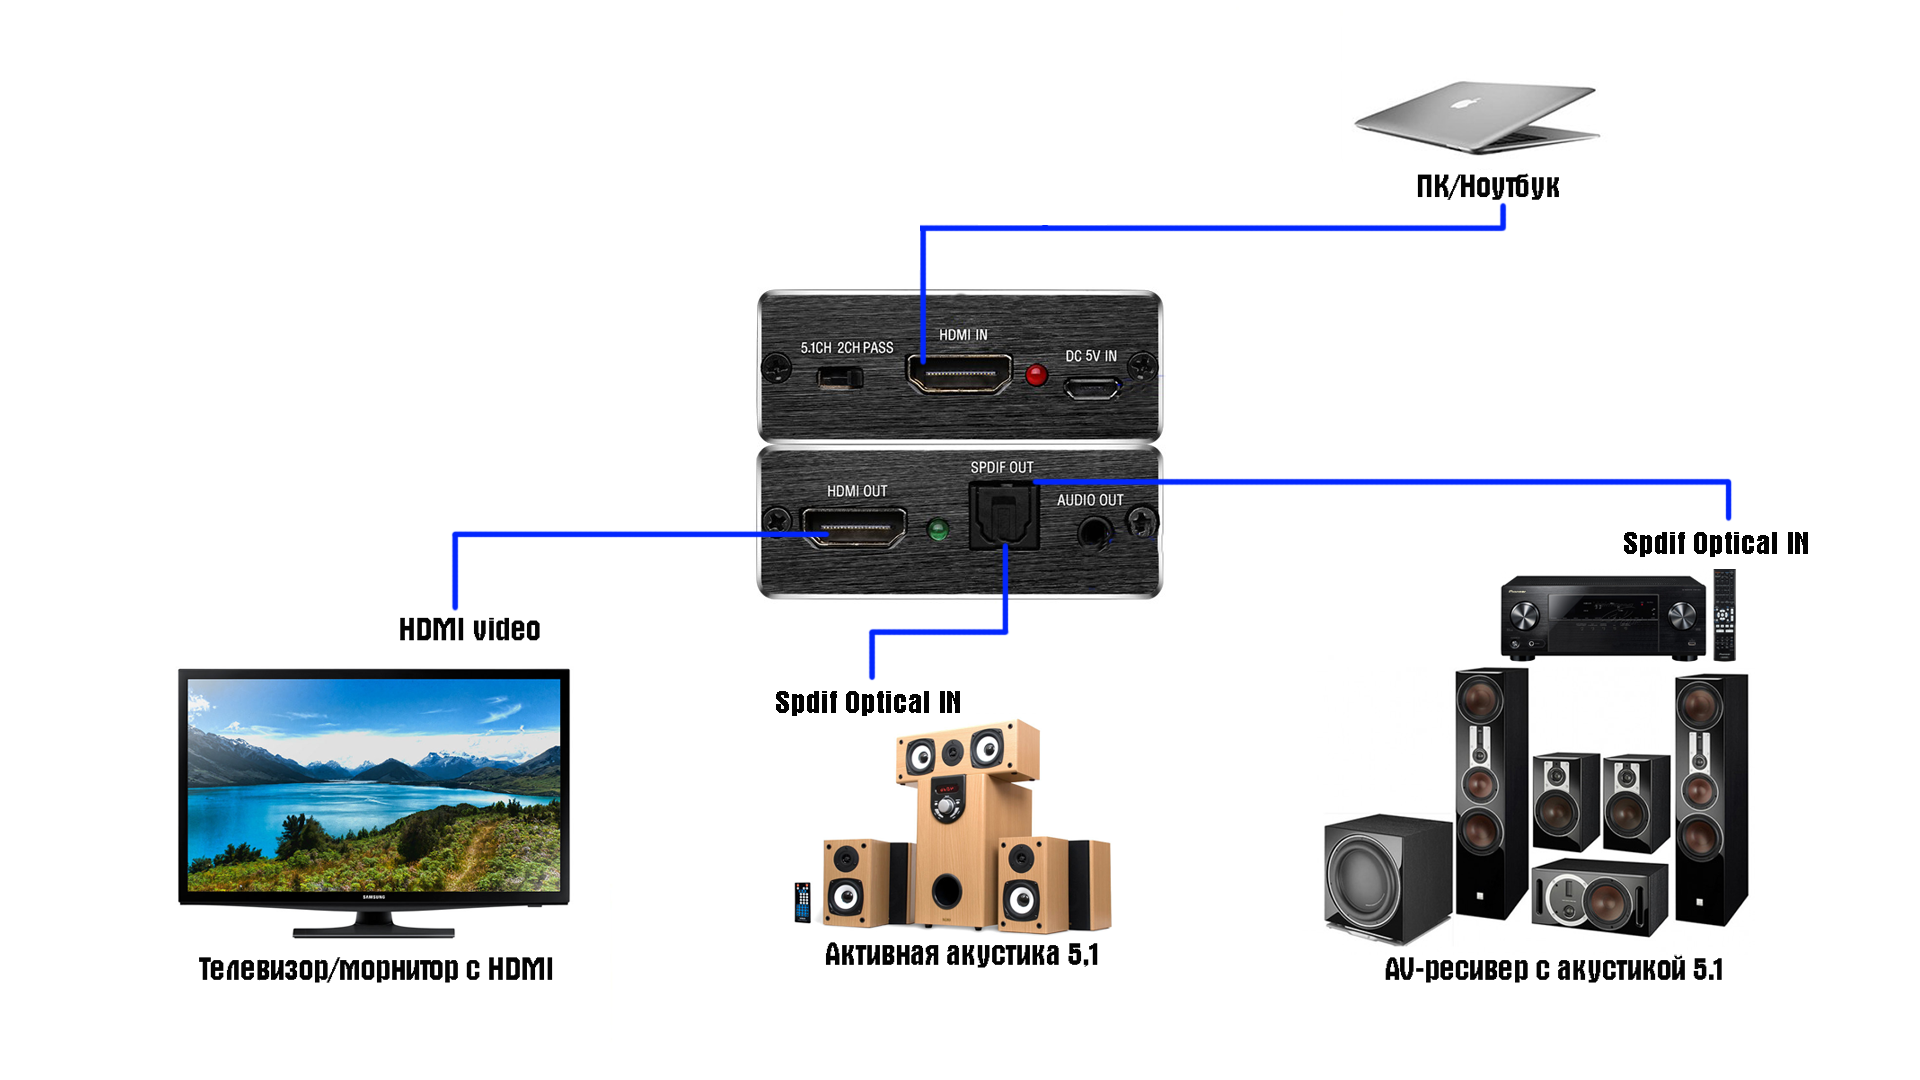 Как переключить звук с компьютера на телевизор? как разделить его hdmi-кабелем и вывести через dvi-кабель? как подключить vga-кабель? другие варианты